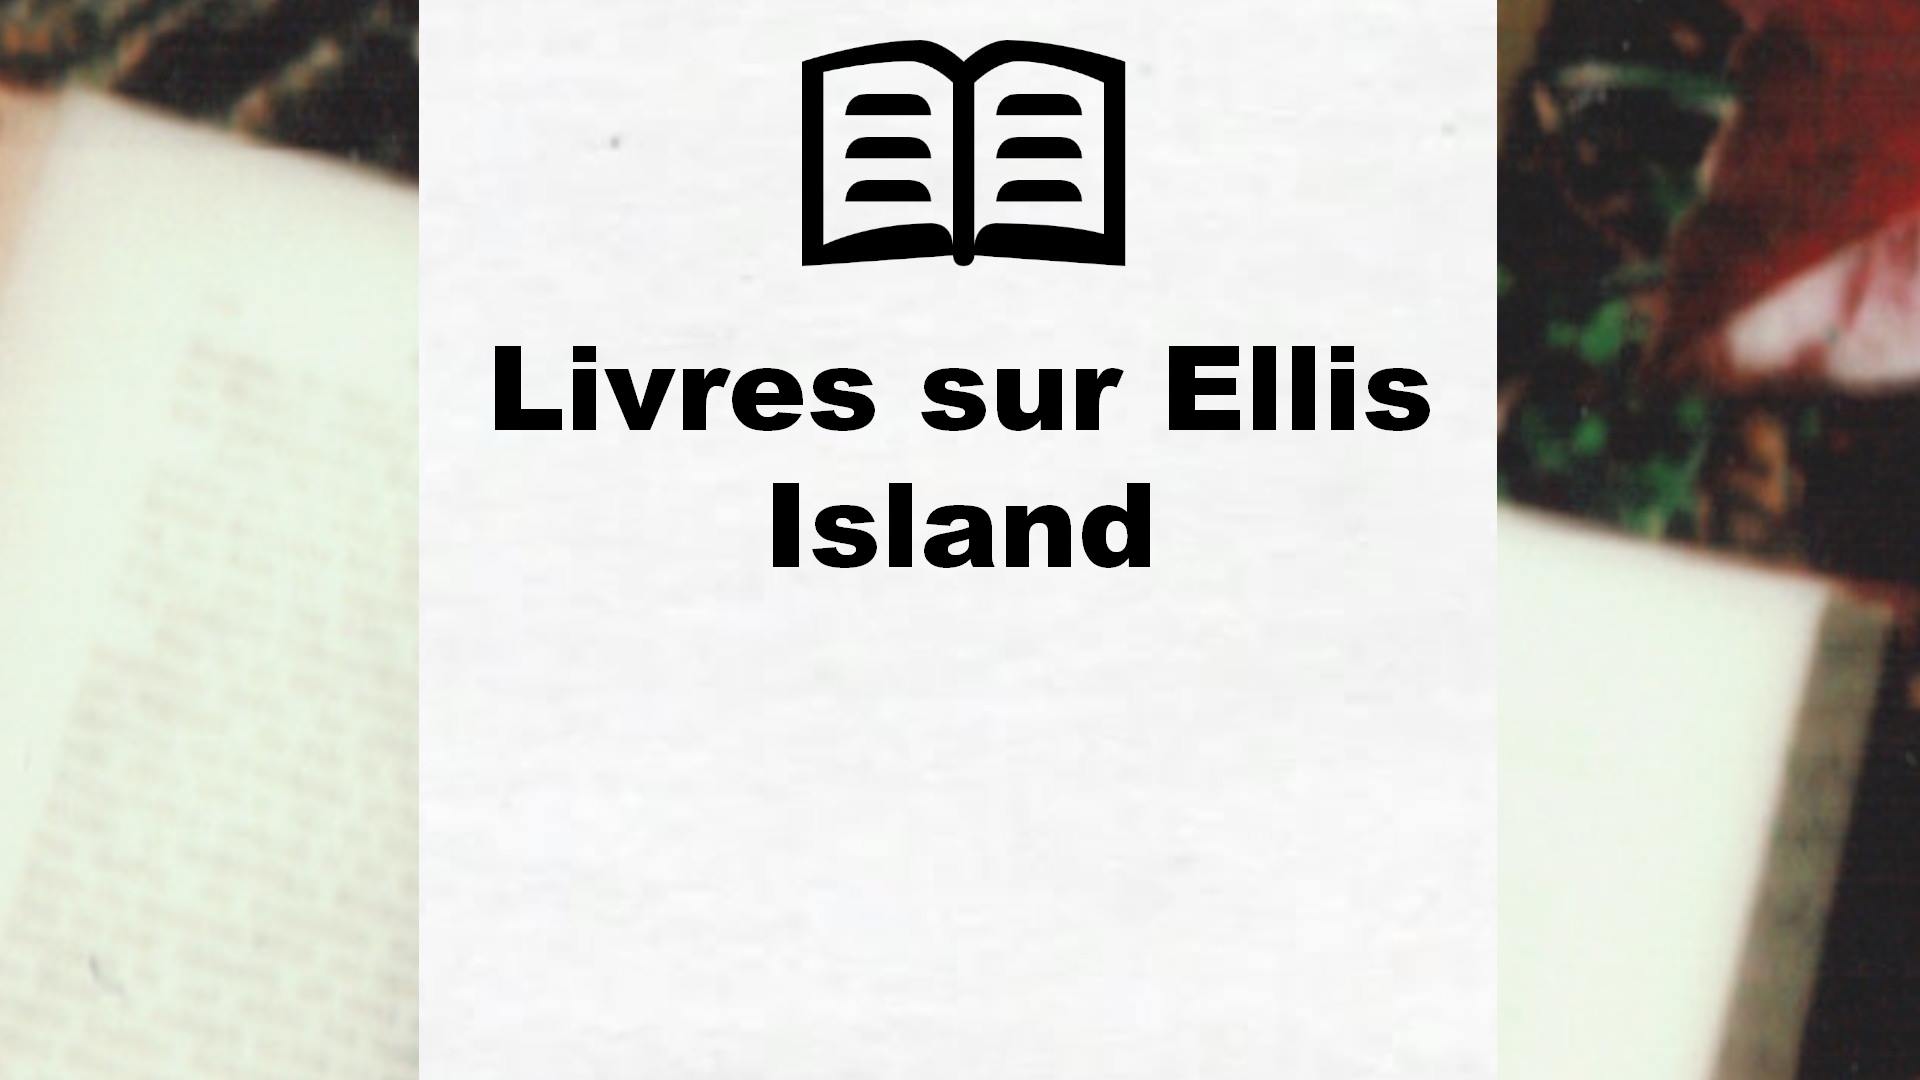 Livres sur Ellis Island